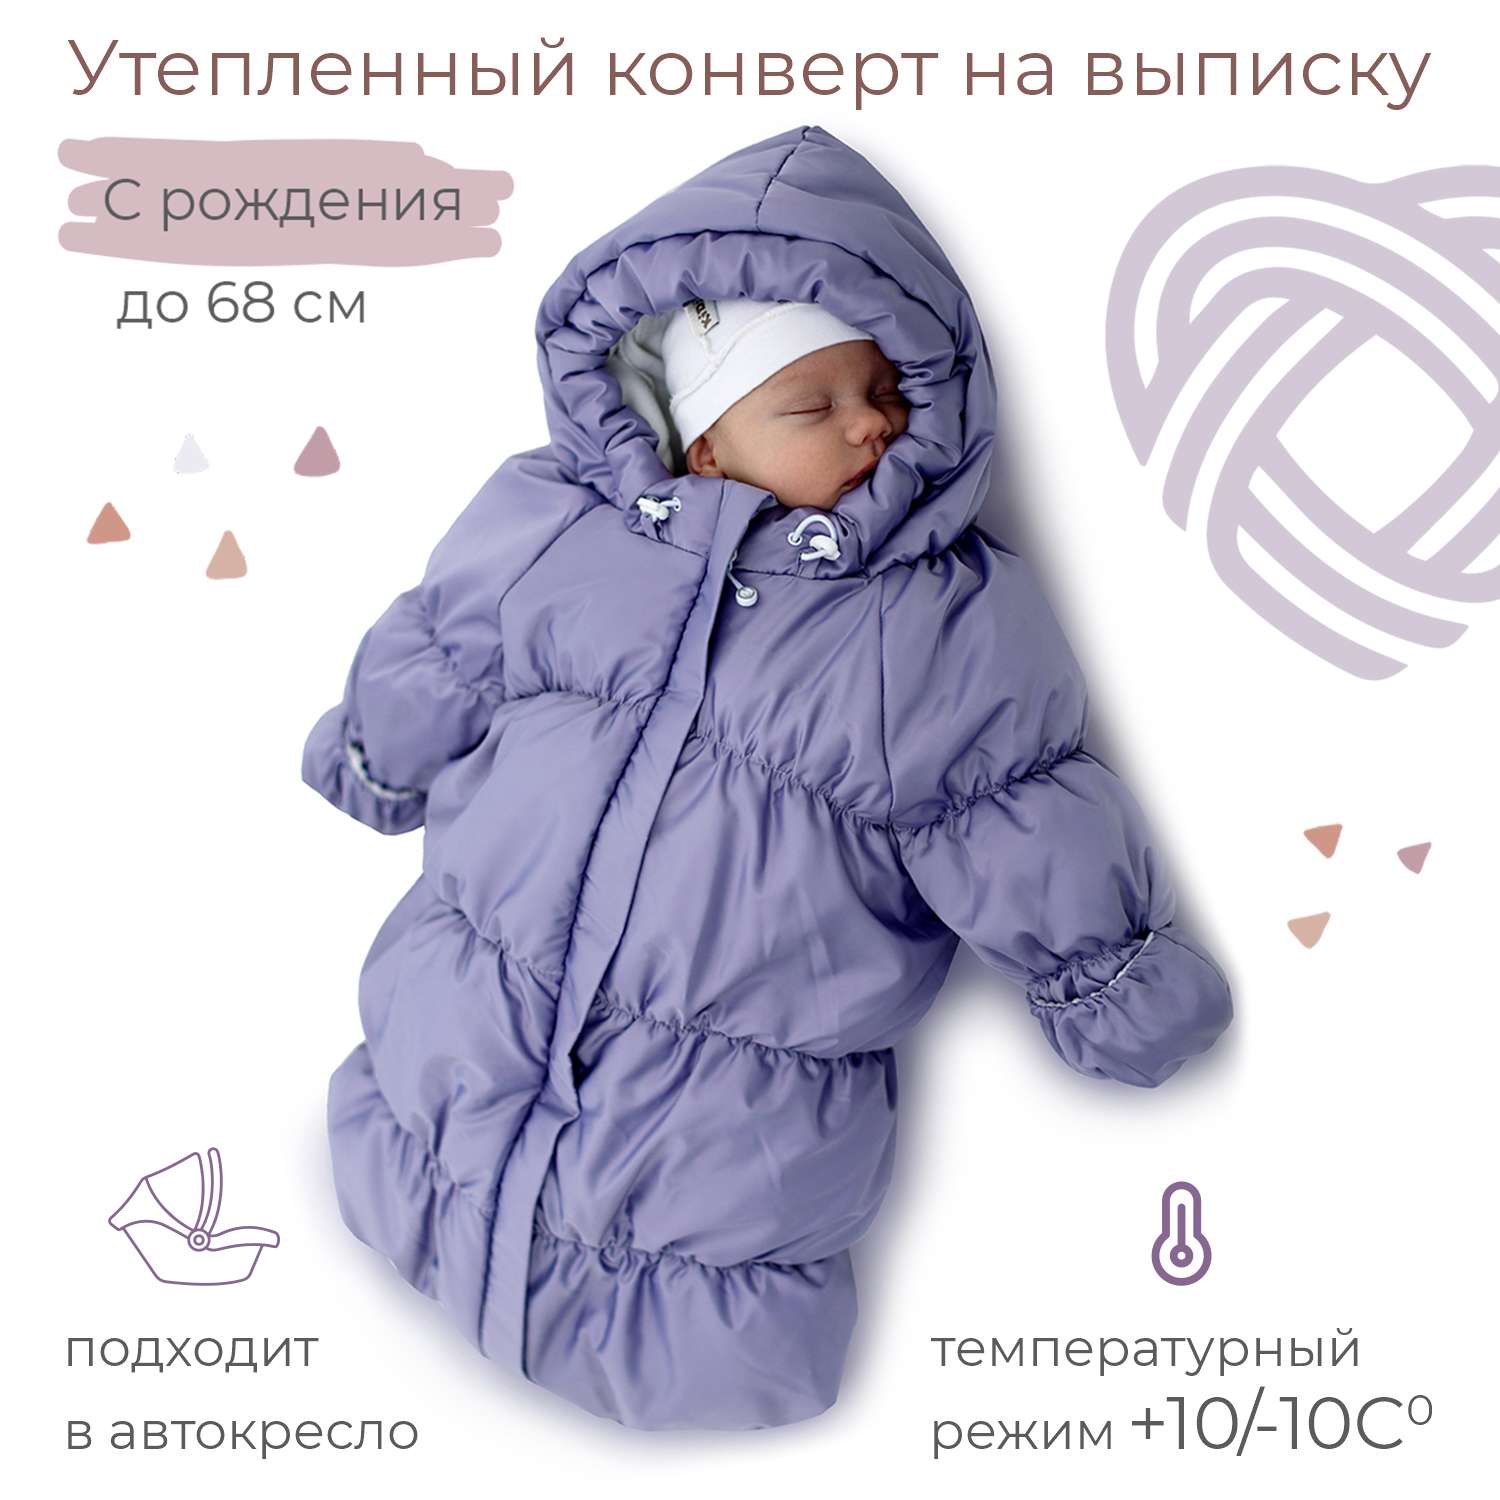 Конверт для новорожденного inlovery на выписку/в коляску «Маршмеллоу» сиреневый - фото 1